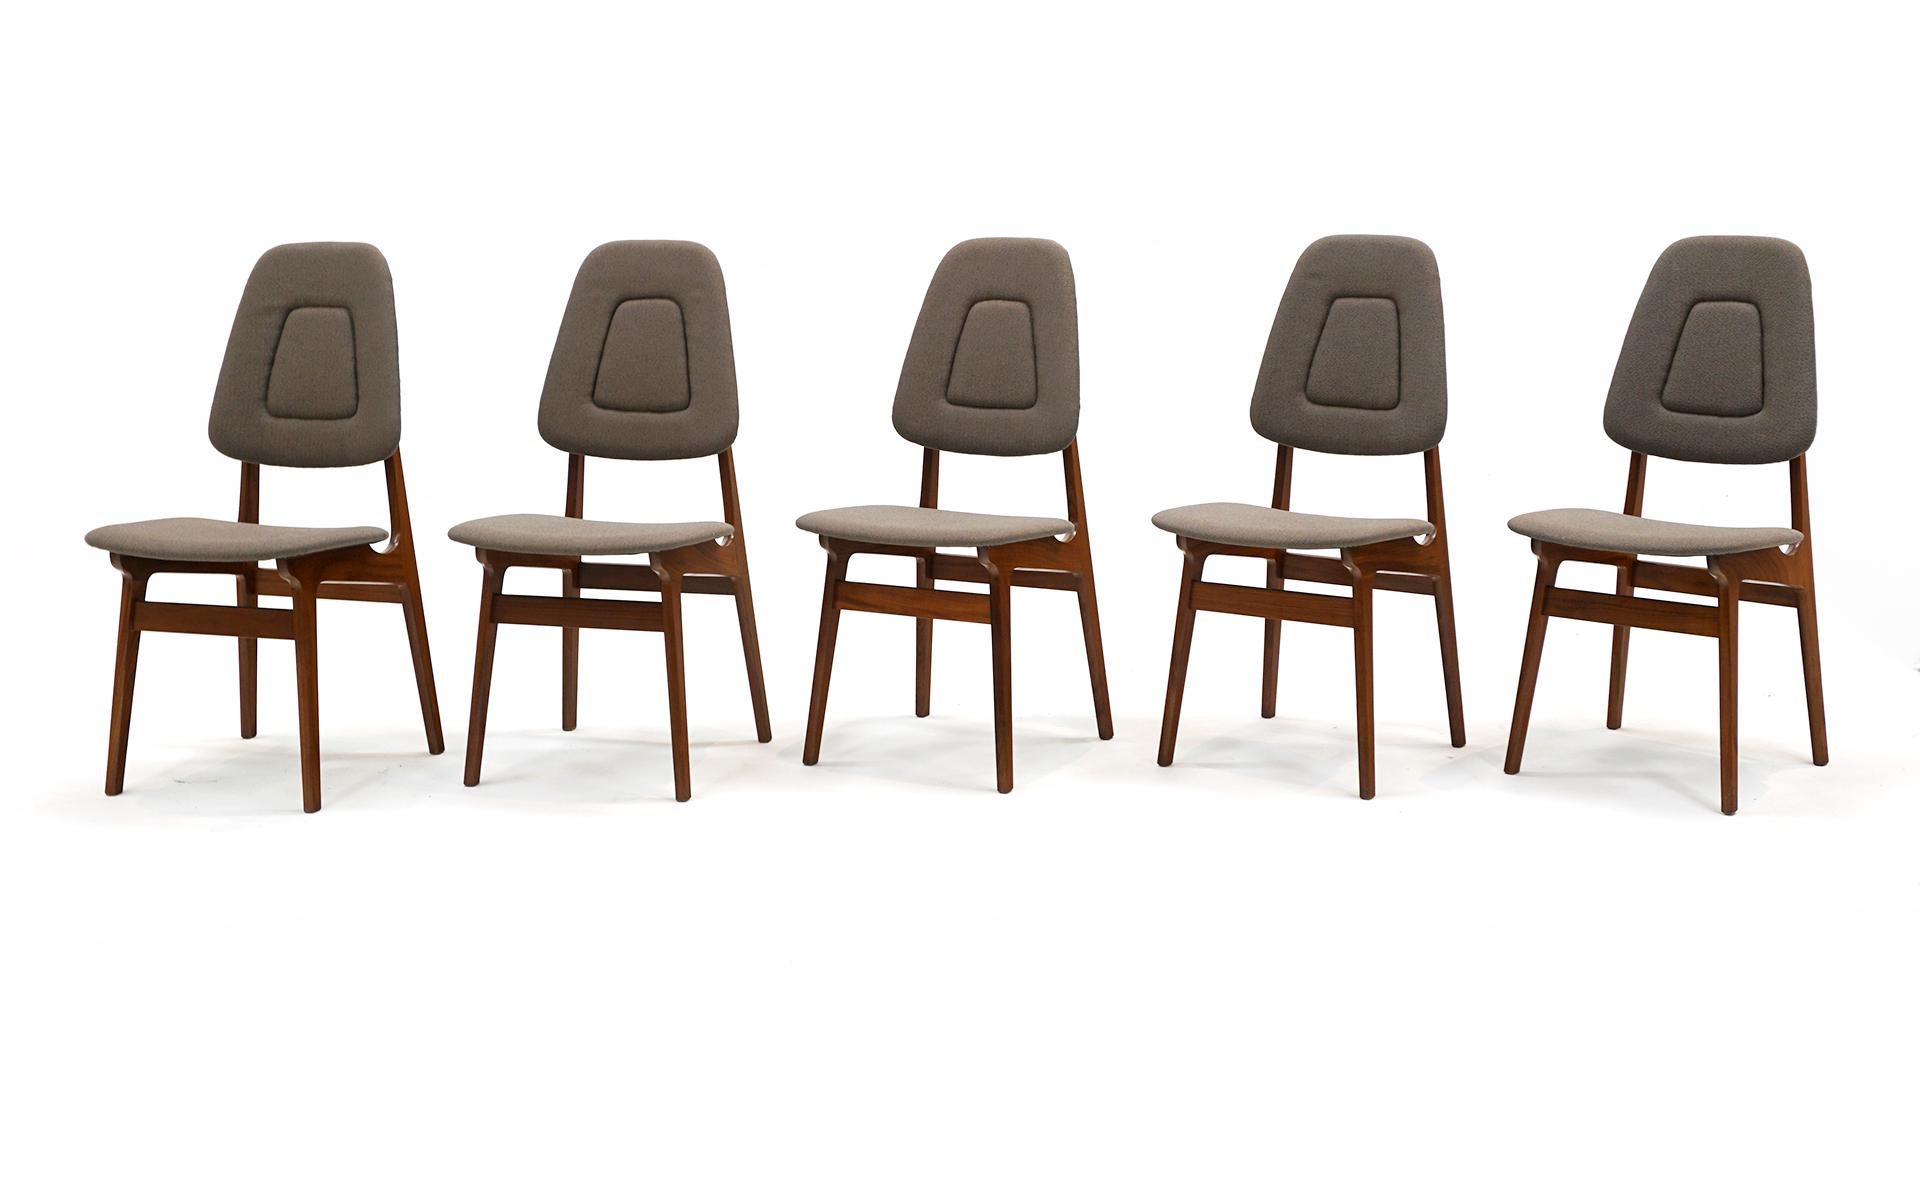 Satz von 10 armlosen Esszimmerstühlen, entworfen von Adrian Pearsall für Craft Associates.  Rahmen aus Nussbaumholz.  Fachmännisch neu gepolstert in einem mittelgrauen/grauen Stoff.  Auf dem vorletzten Foto ist ein kleiner Fleck mit einem